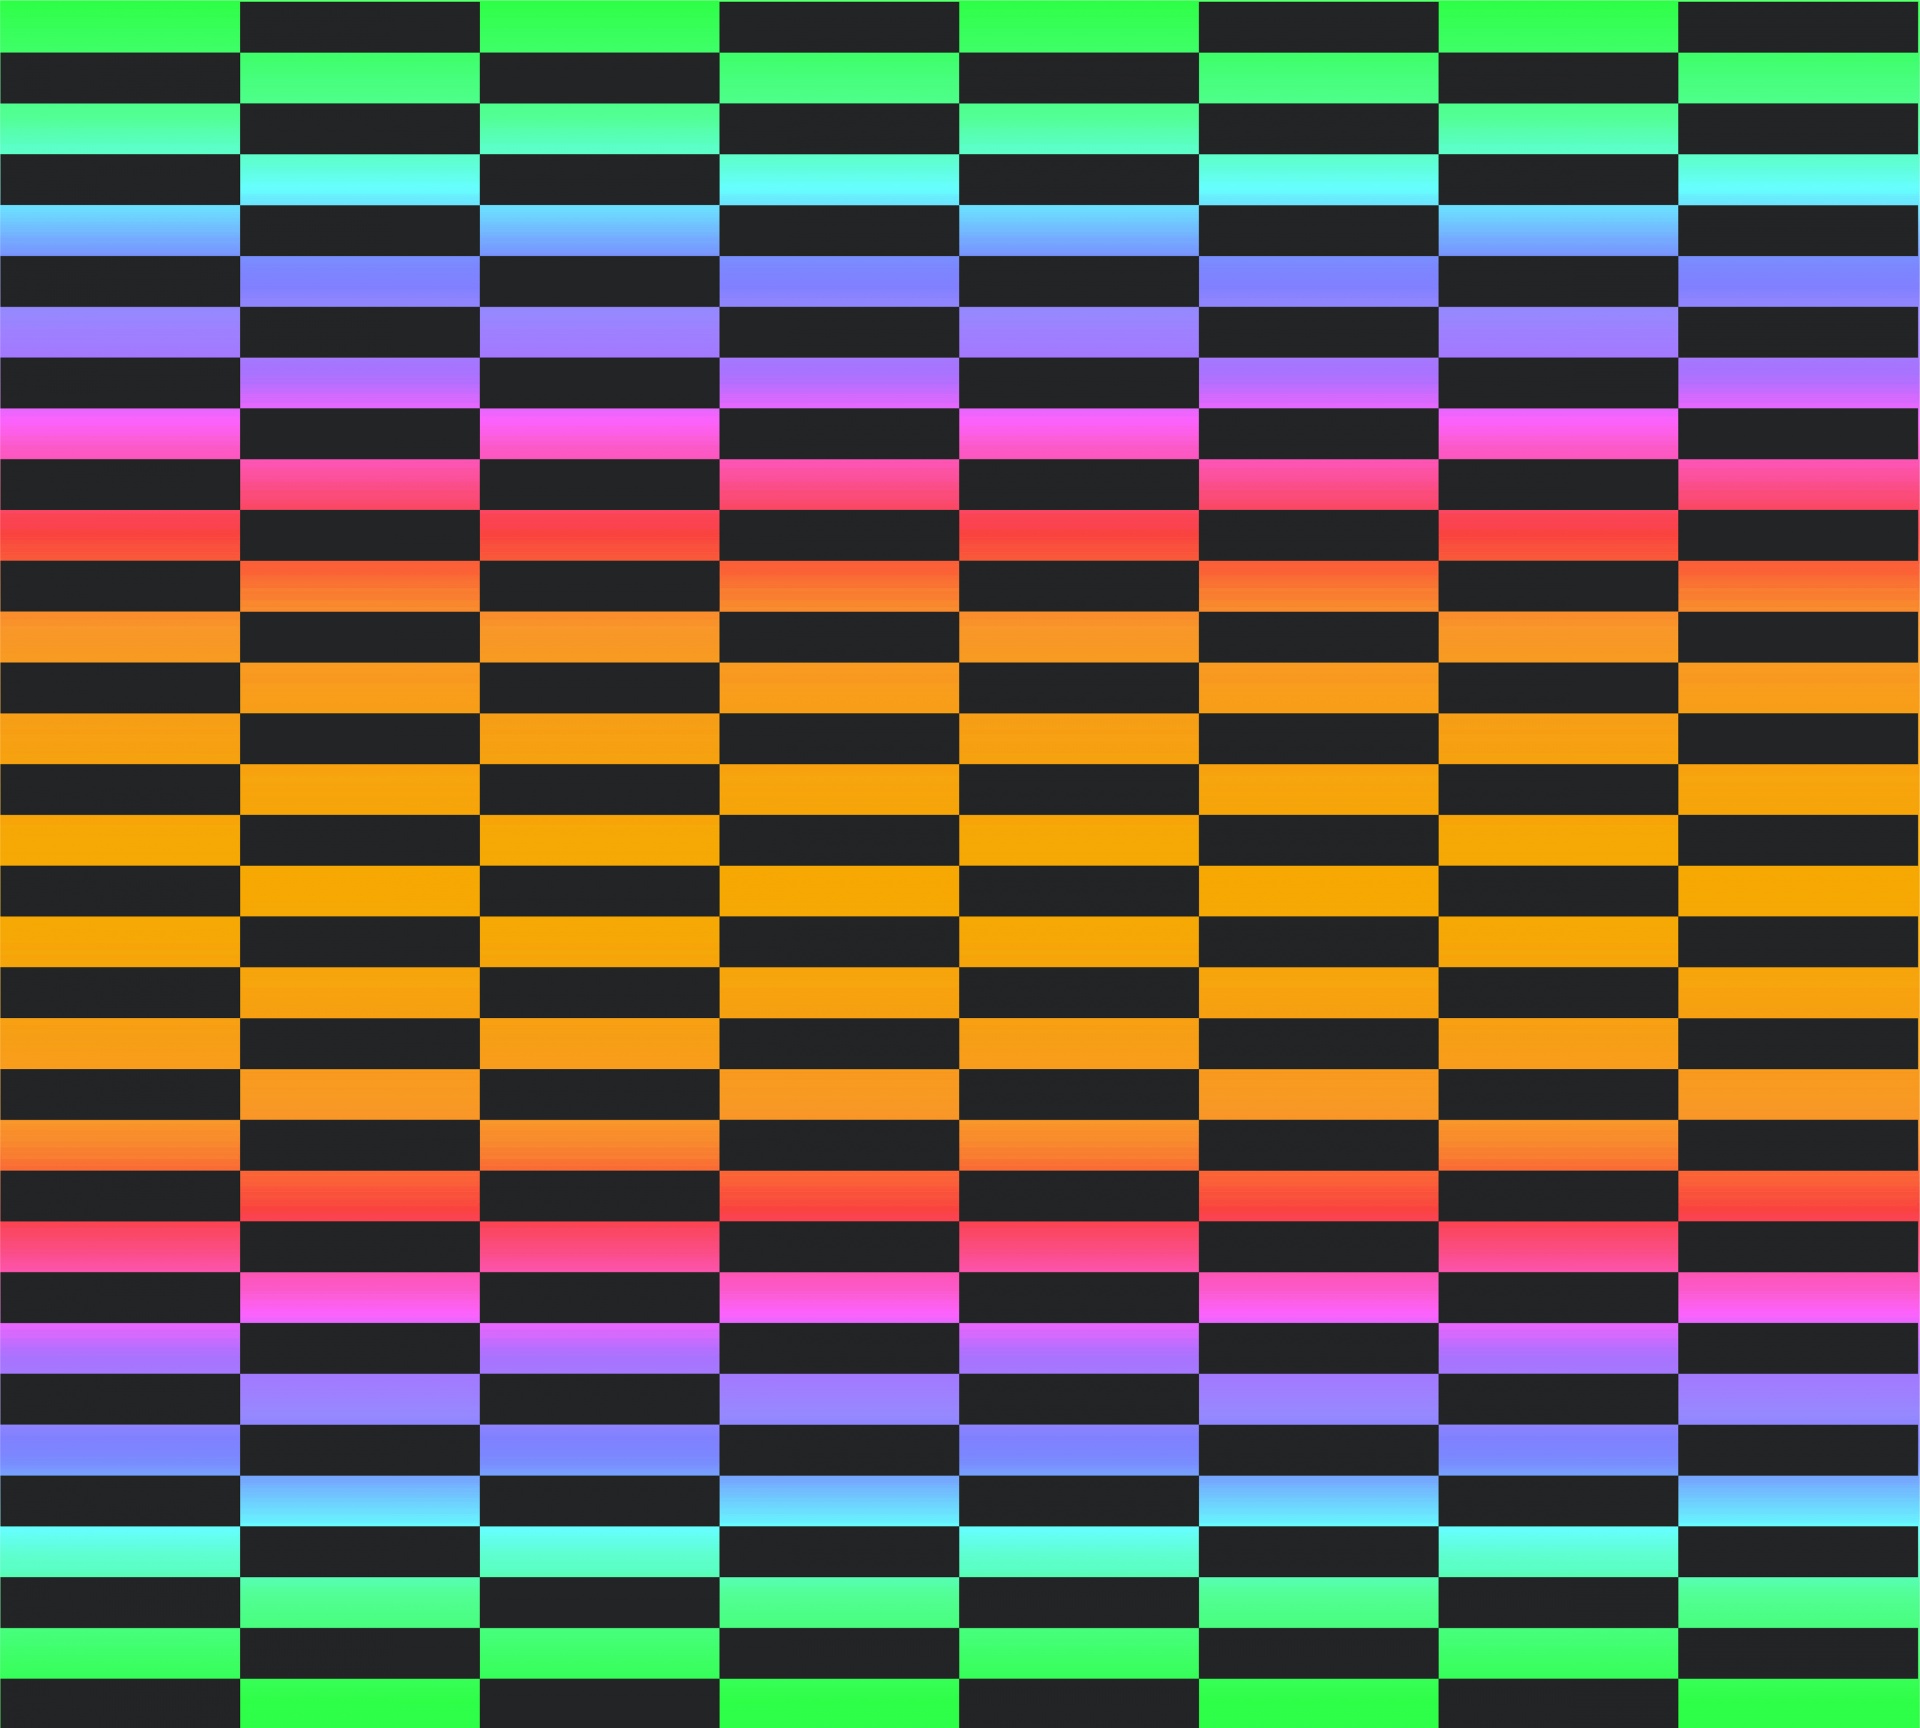 Checkered Multicolored Background